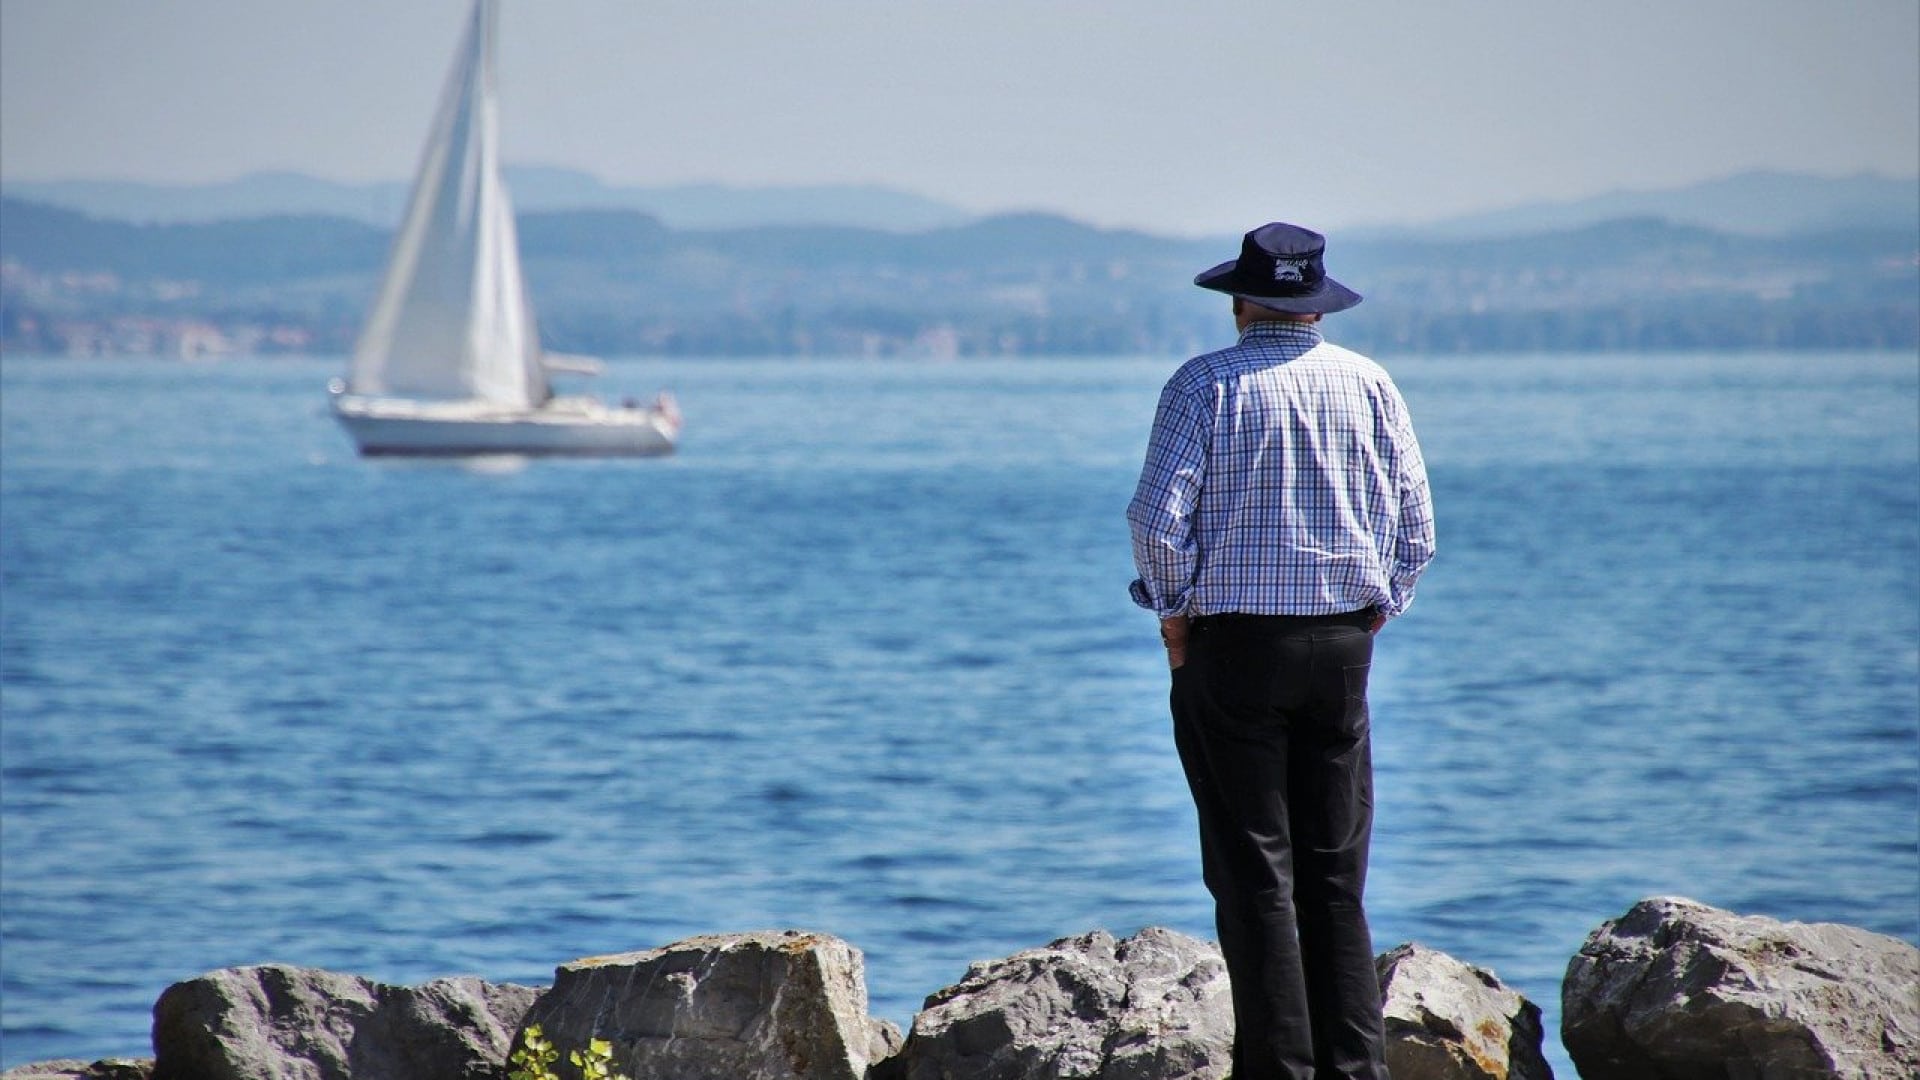 Homme au chapeau debout sur des rochers et observant un voilier sur l'eau.